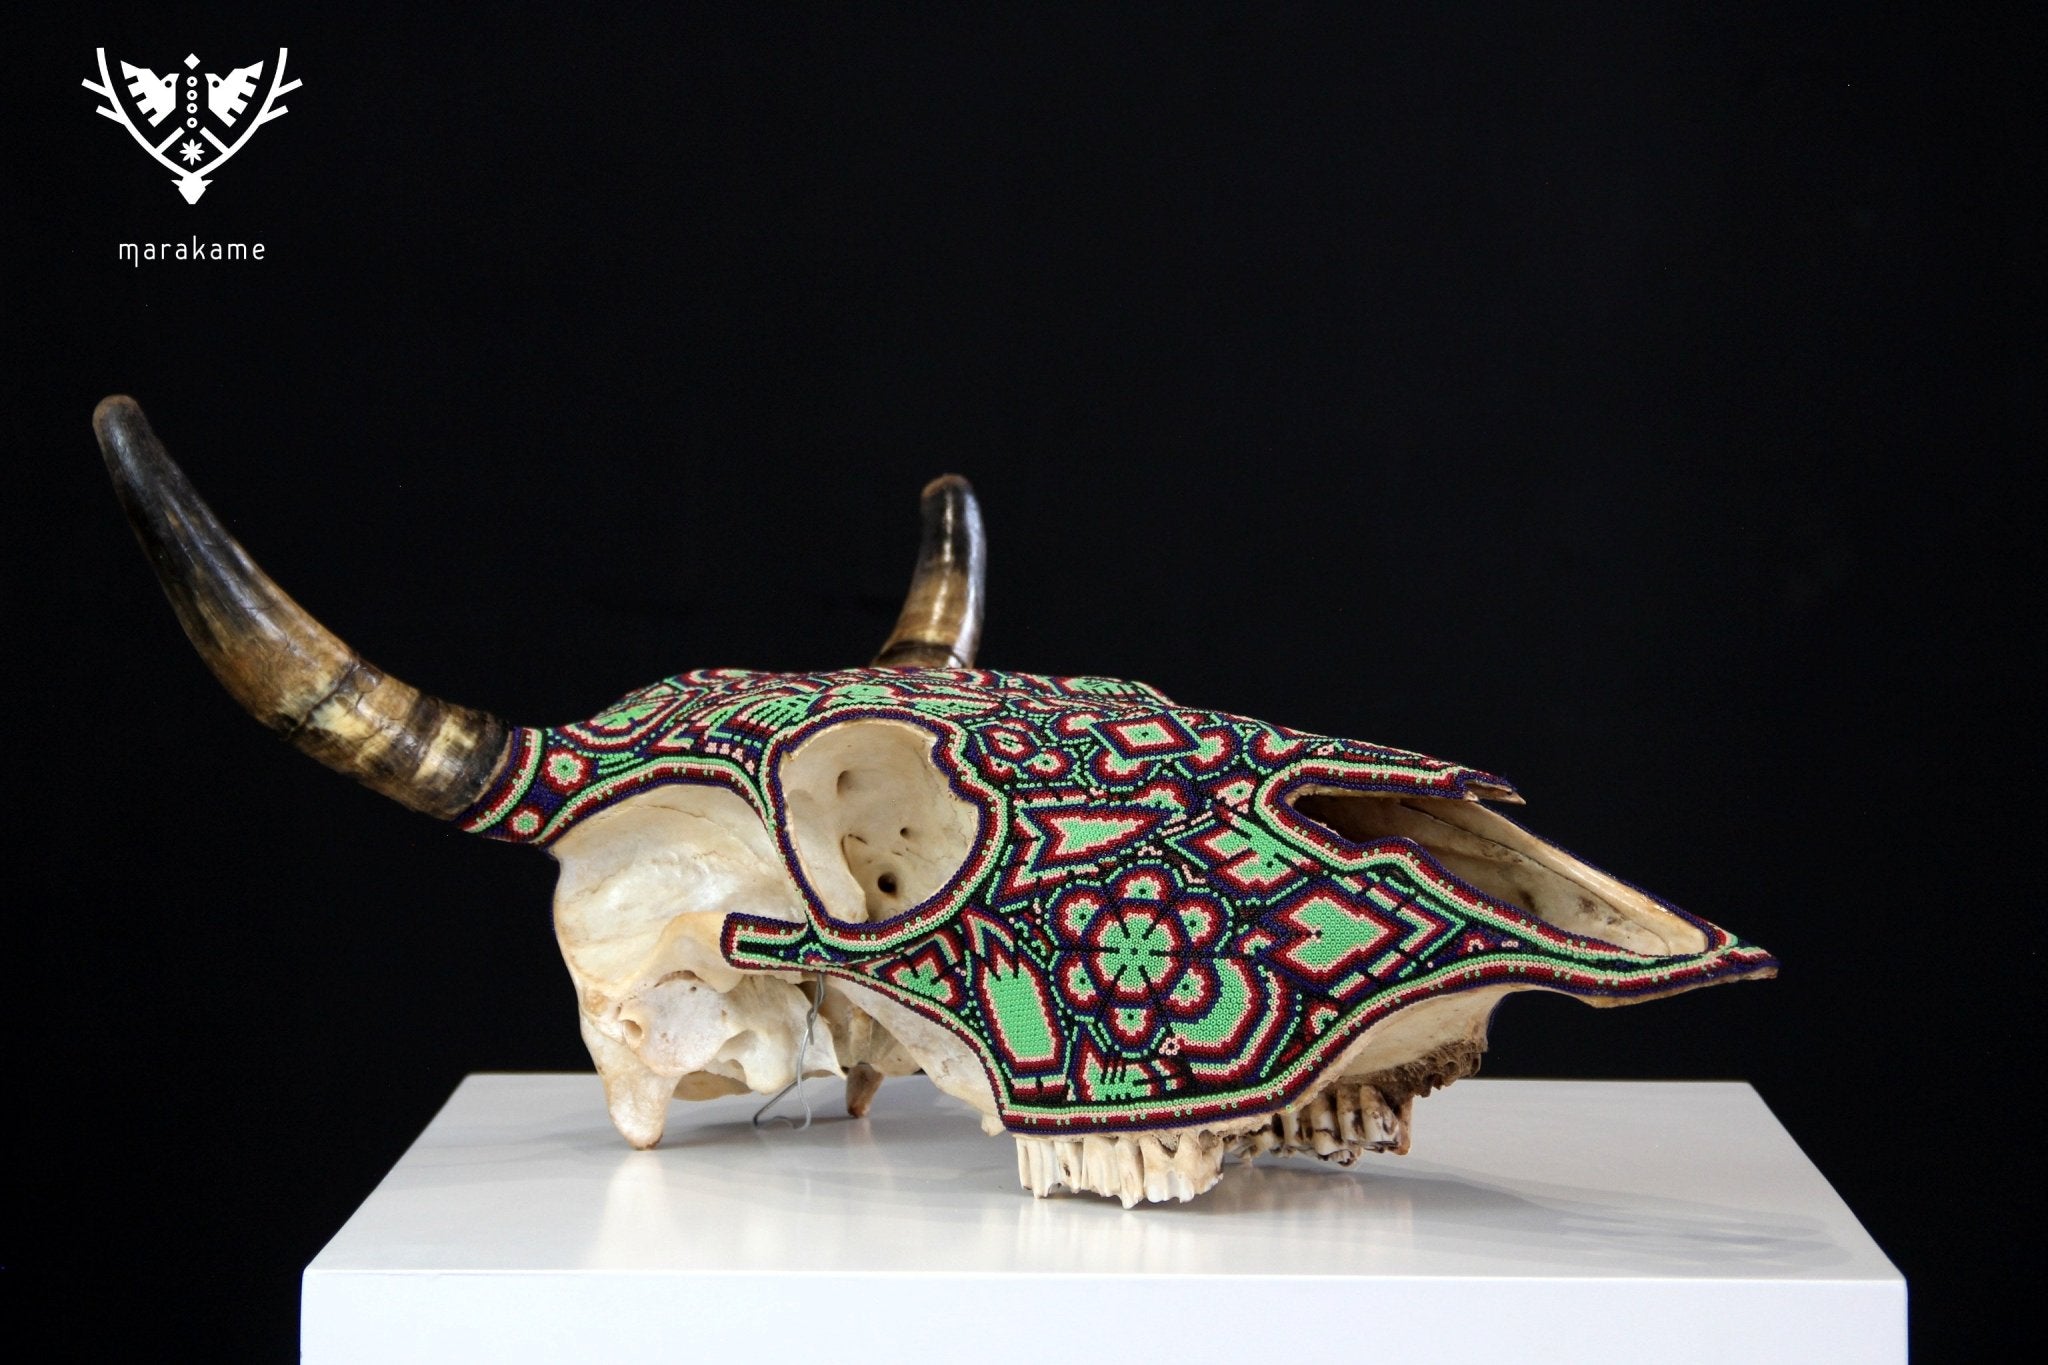 牛の頭蓋骨 ウイチョル芸術 - Nierika miire - ウイチョル芸術 - マラカメ